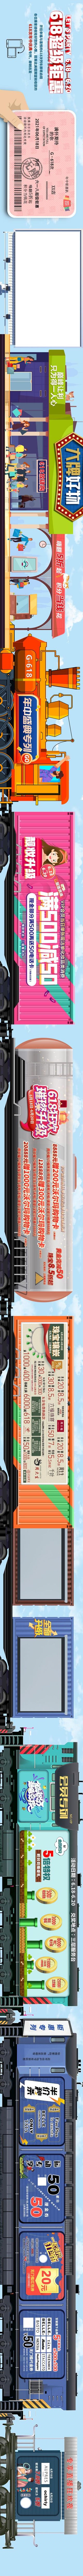 【南门网】长图 主画面 活动 节日 商业 618 火车票 火车 优惠 活动 